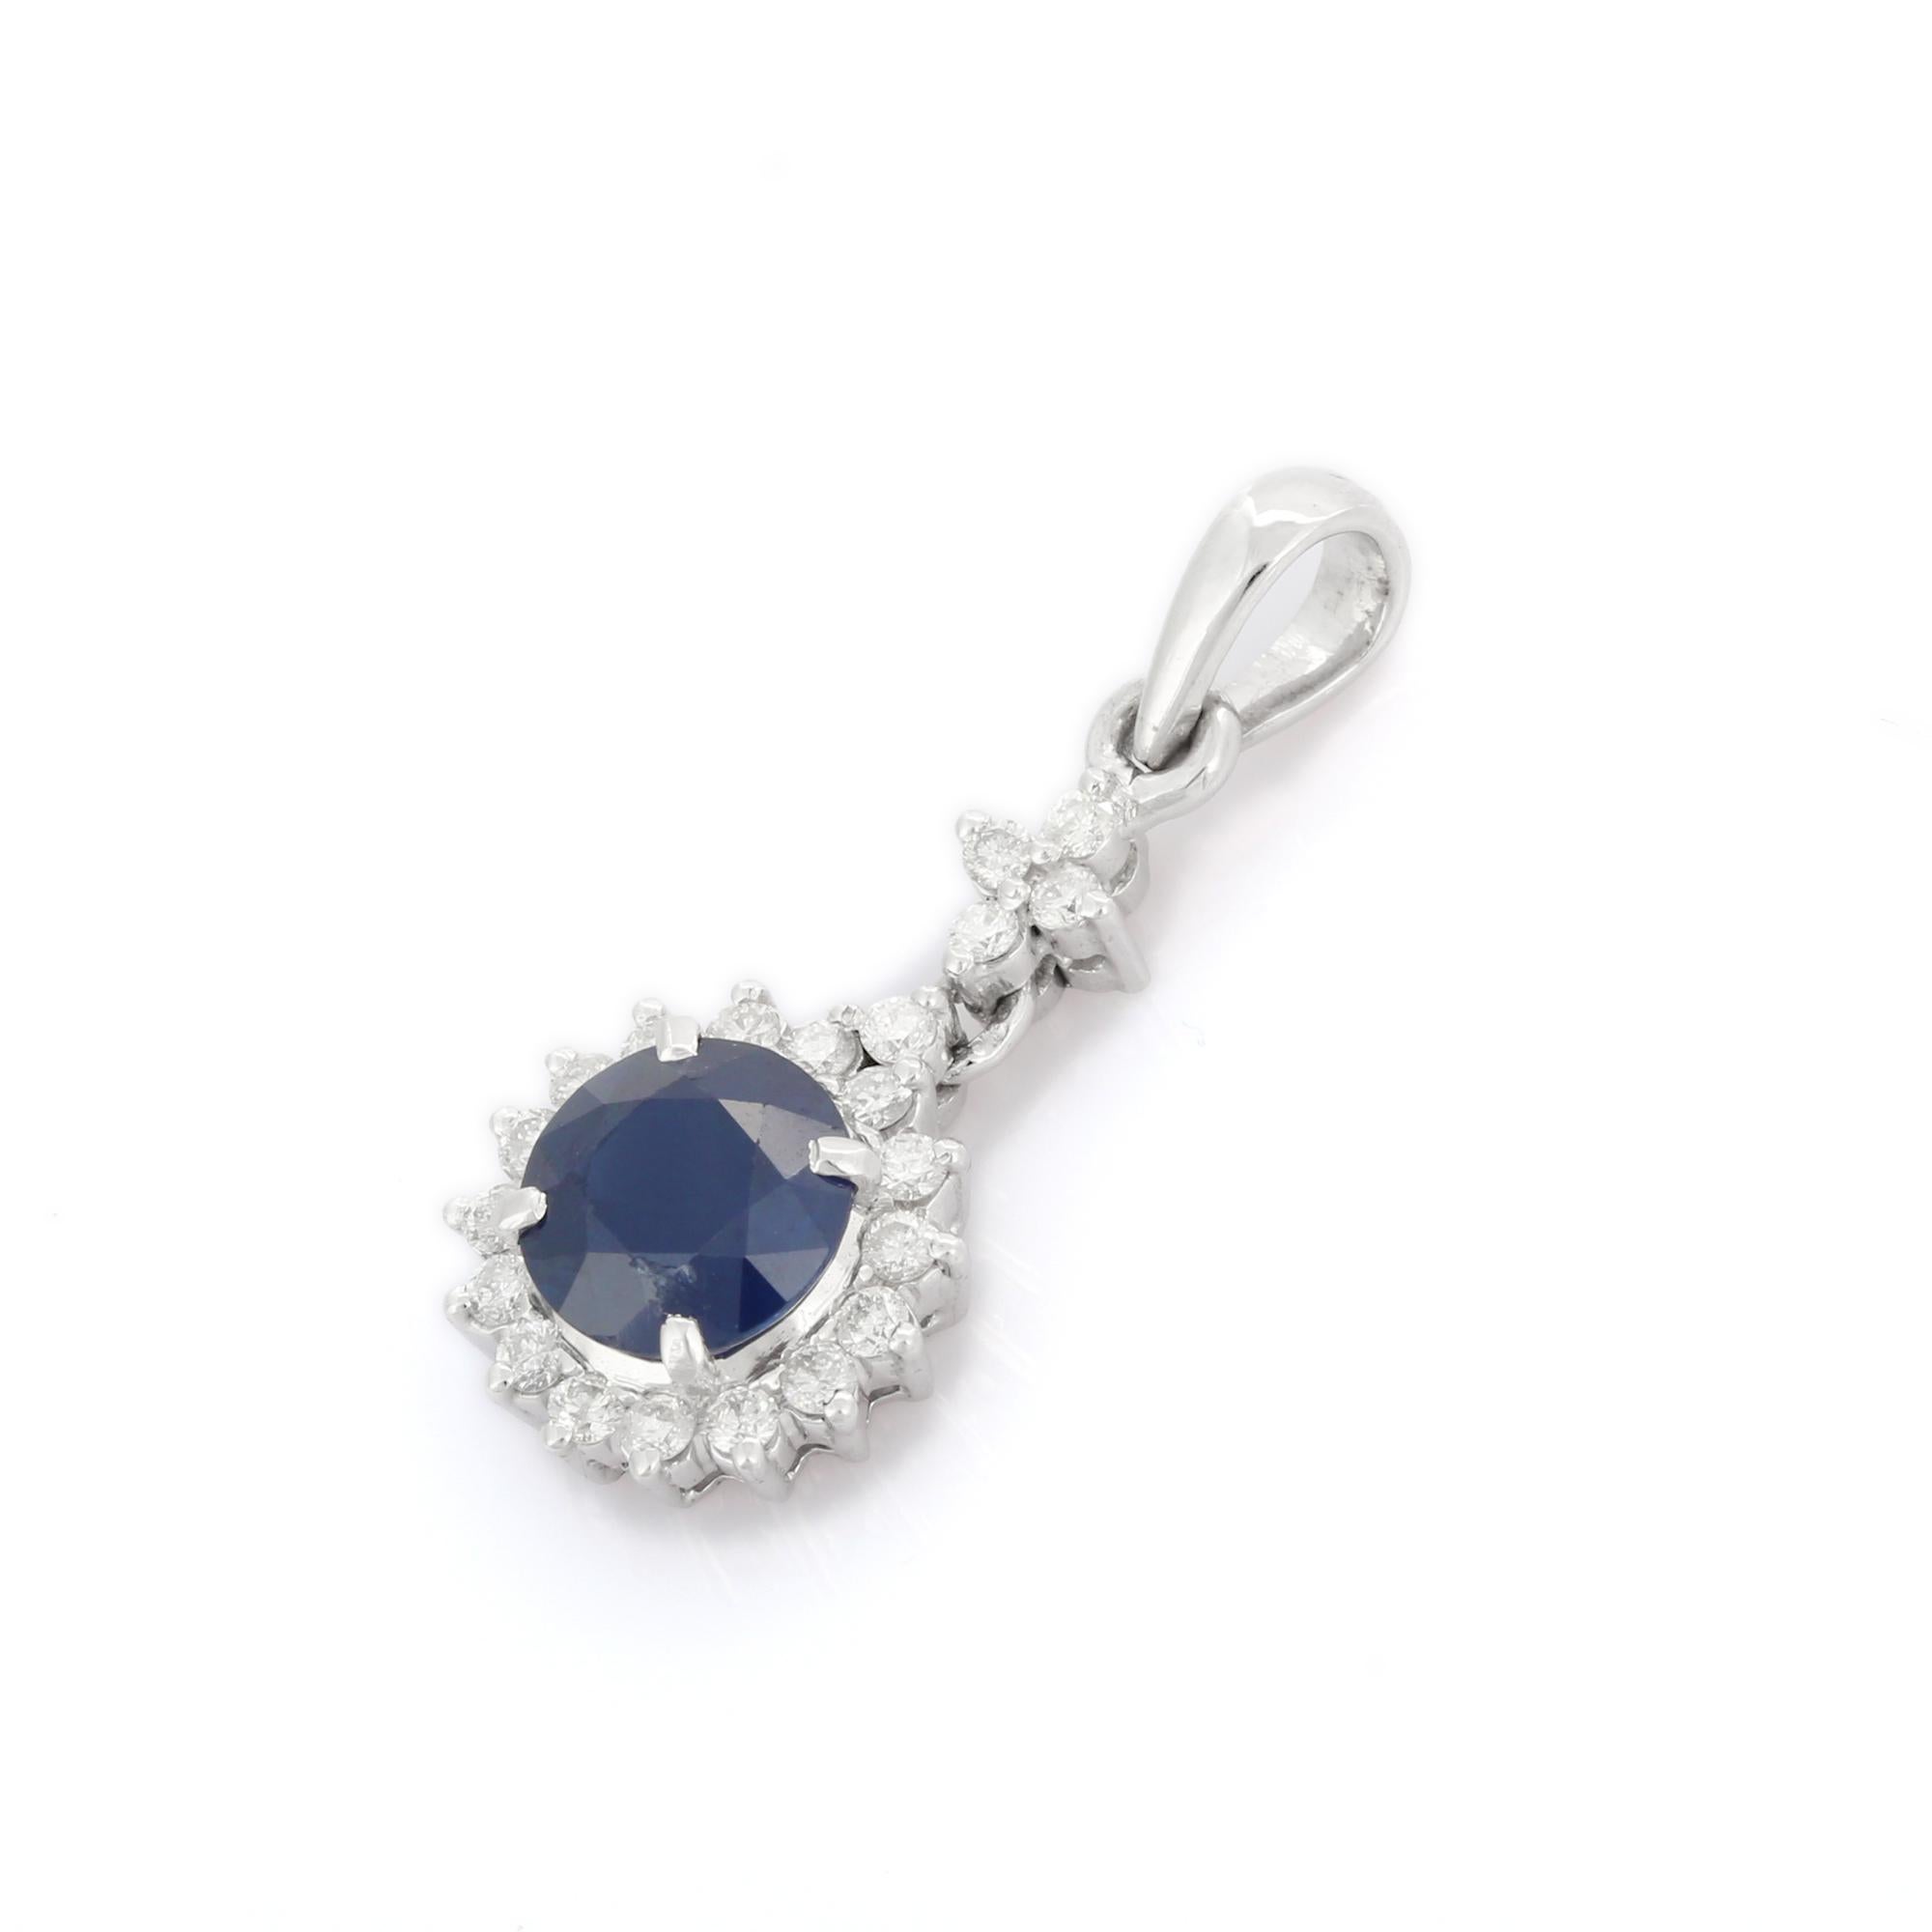 Pendentif en saphir bleu naturel en or 18K. Il comporte un saphir de taille ronde constellé de diamants qui complètent votre look avec une touche décente. Les pendentifs sont utilisés pour être portés ou offerts pour représenter l'amour et les